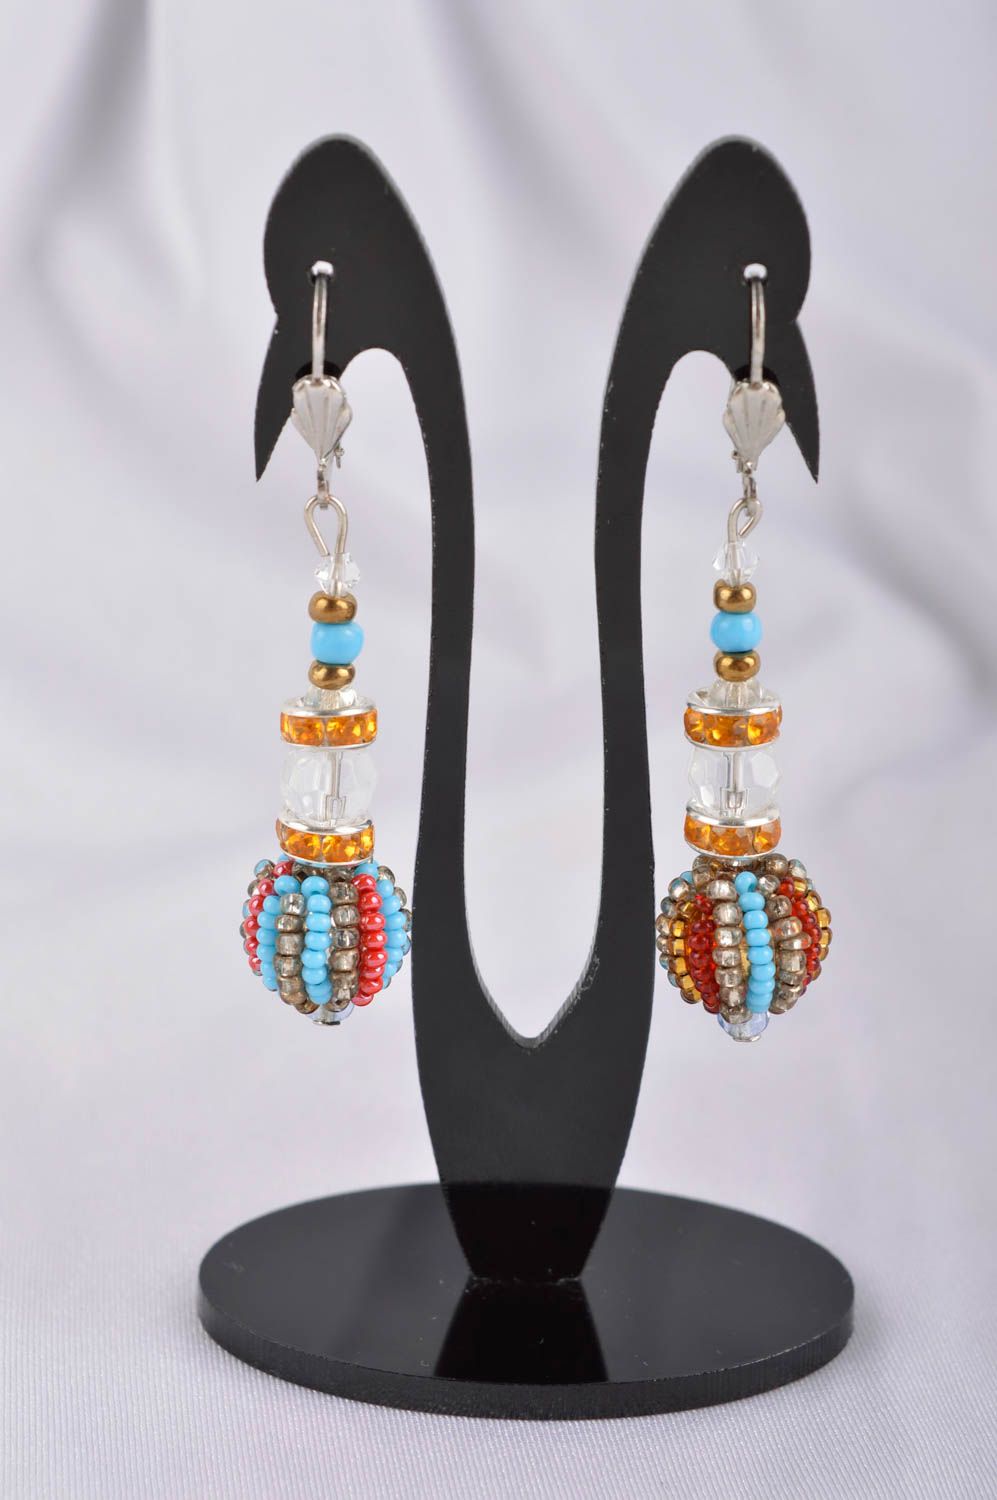 Handmade earrings ladies earrings handmade jewelry earrings for women gift ideas photo 1